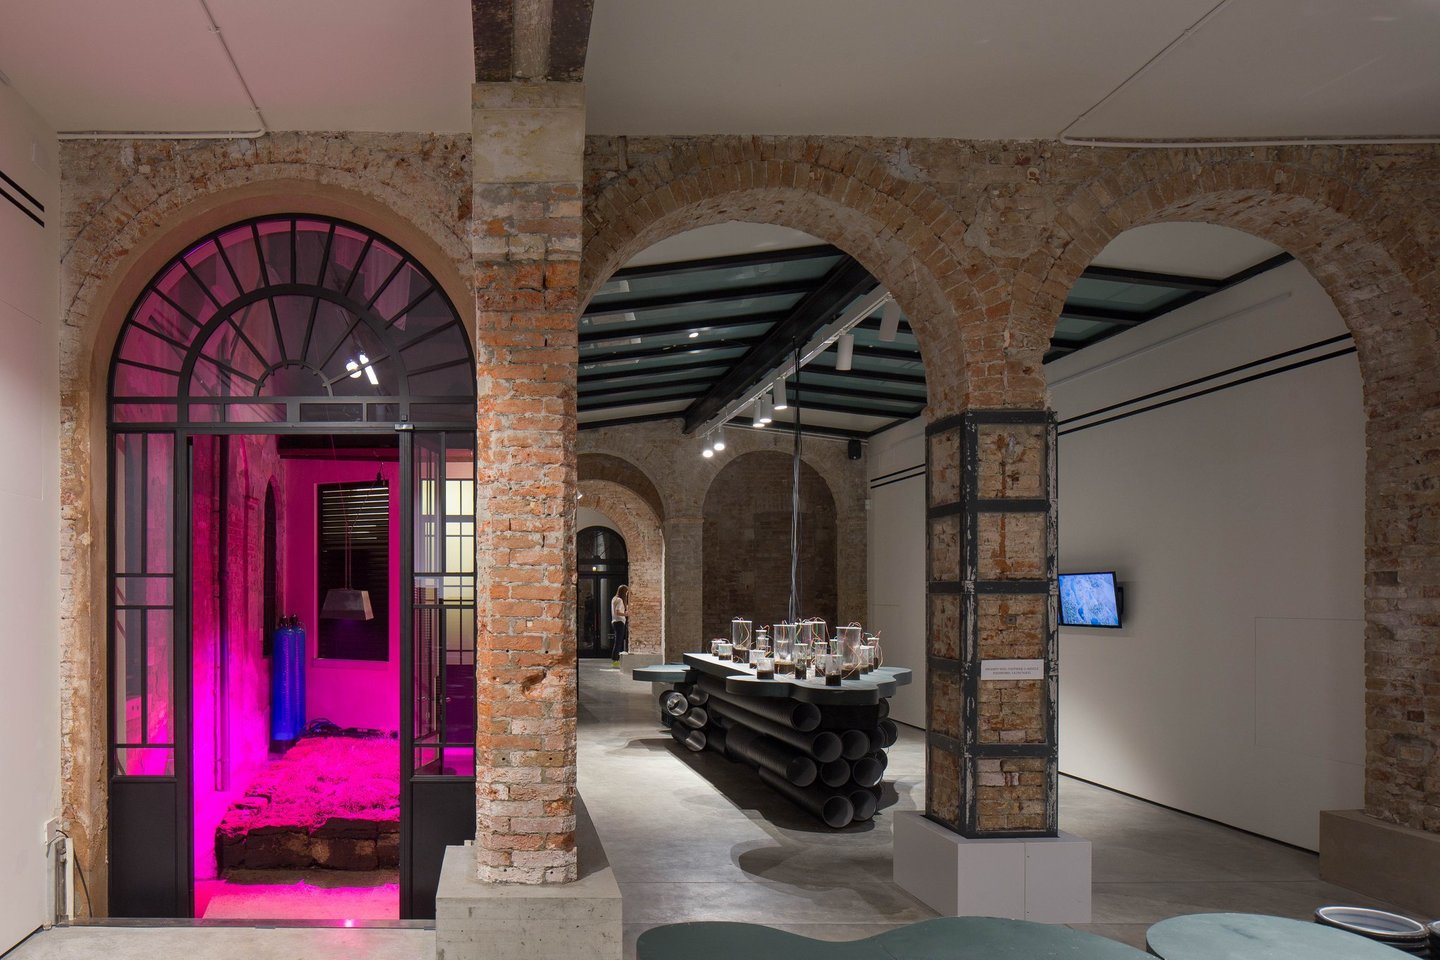  Venecijos bienalėje Lietuva įrengė Pelkių paviljoną.